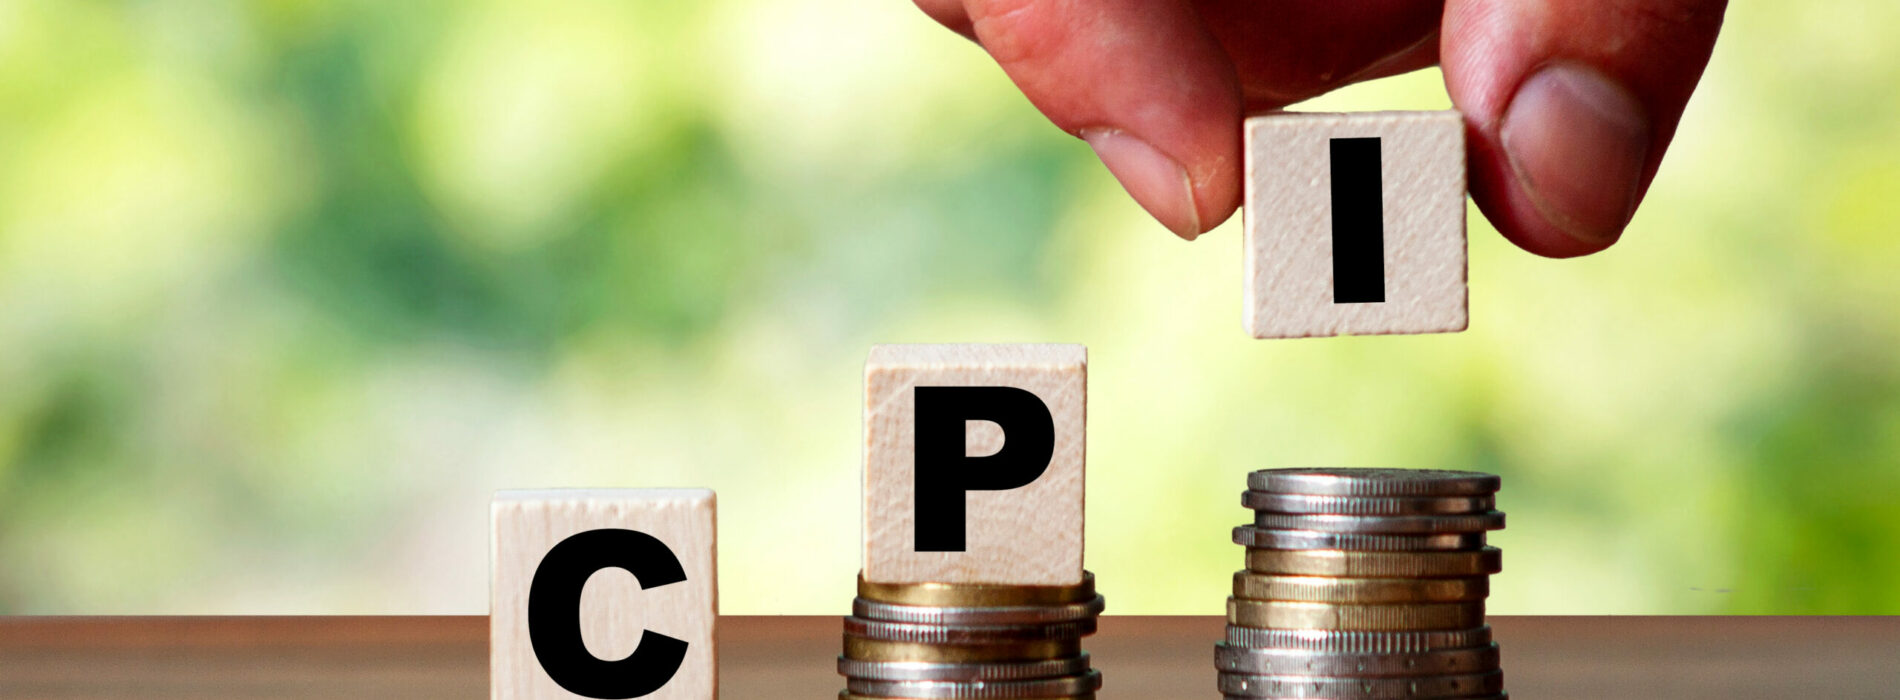 CPI – co to za wskaźnik i jak wpływa na rynki finansowe?